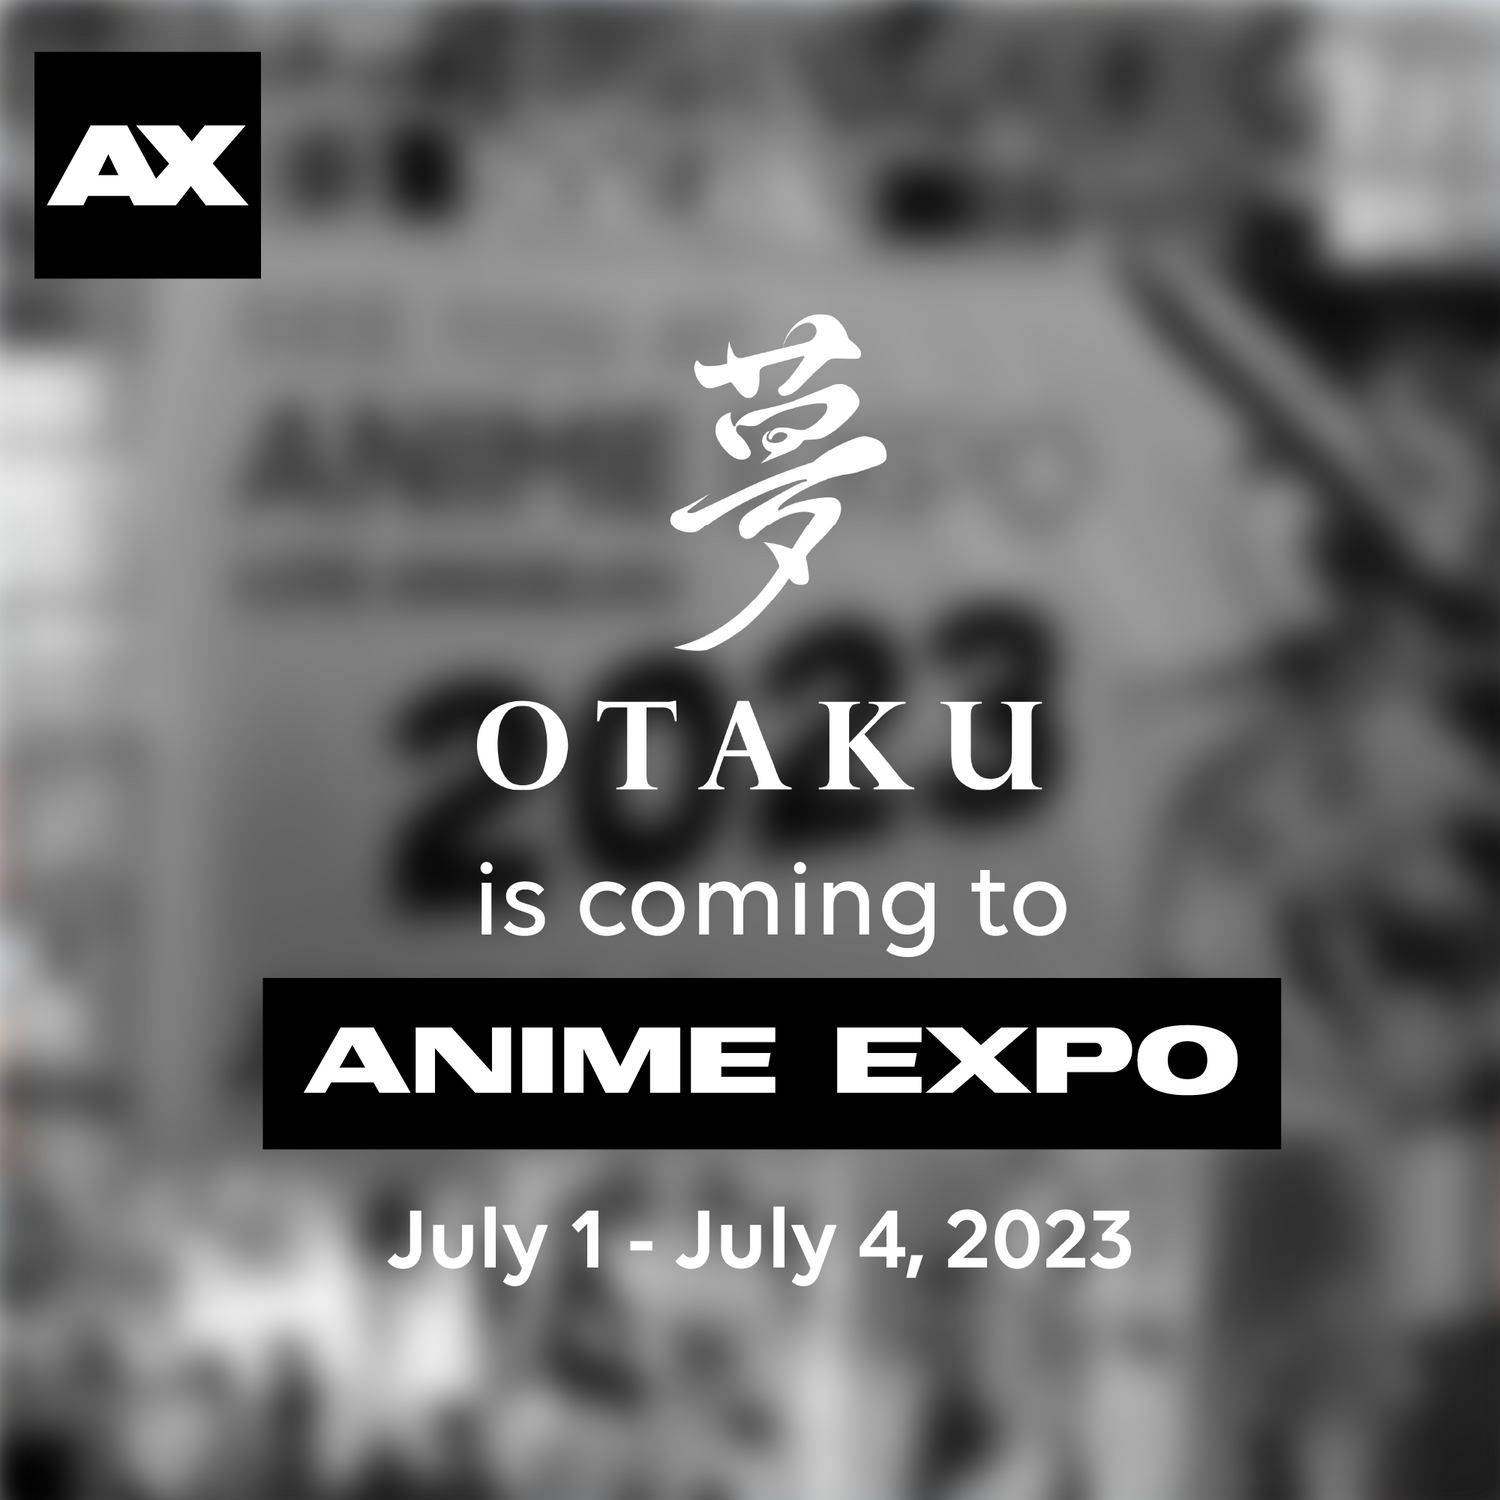 Otaku is coming to Anime Expo 2023